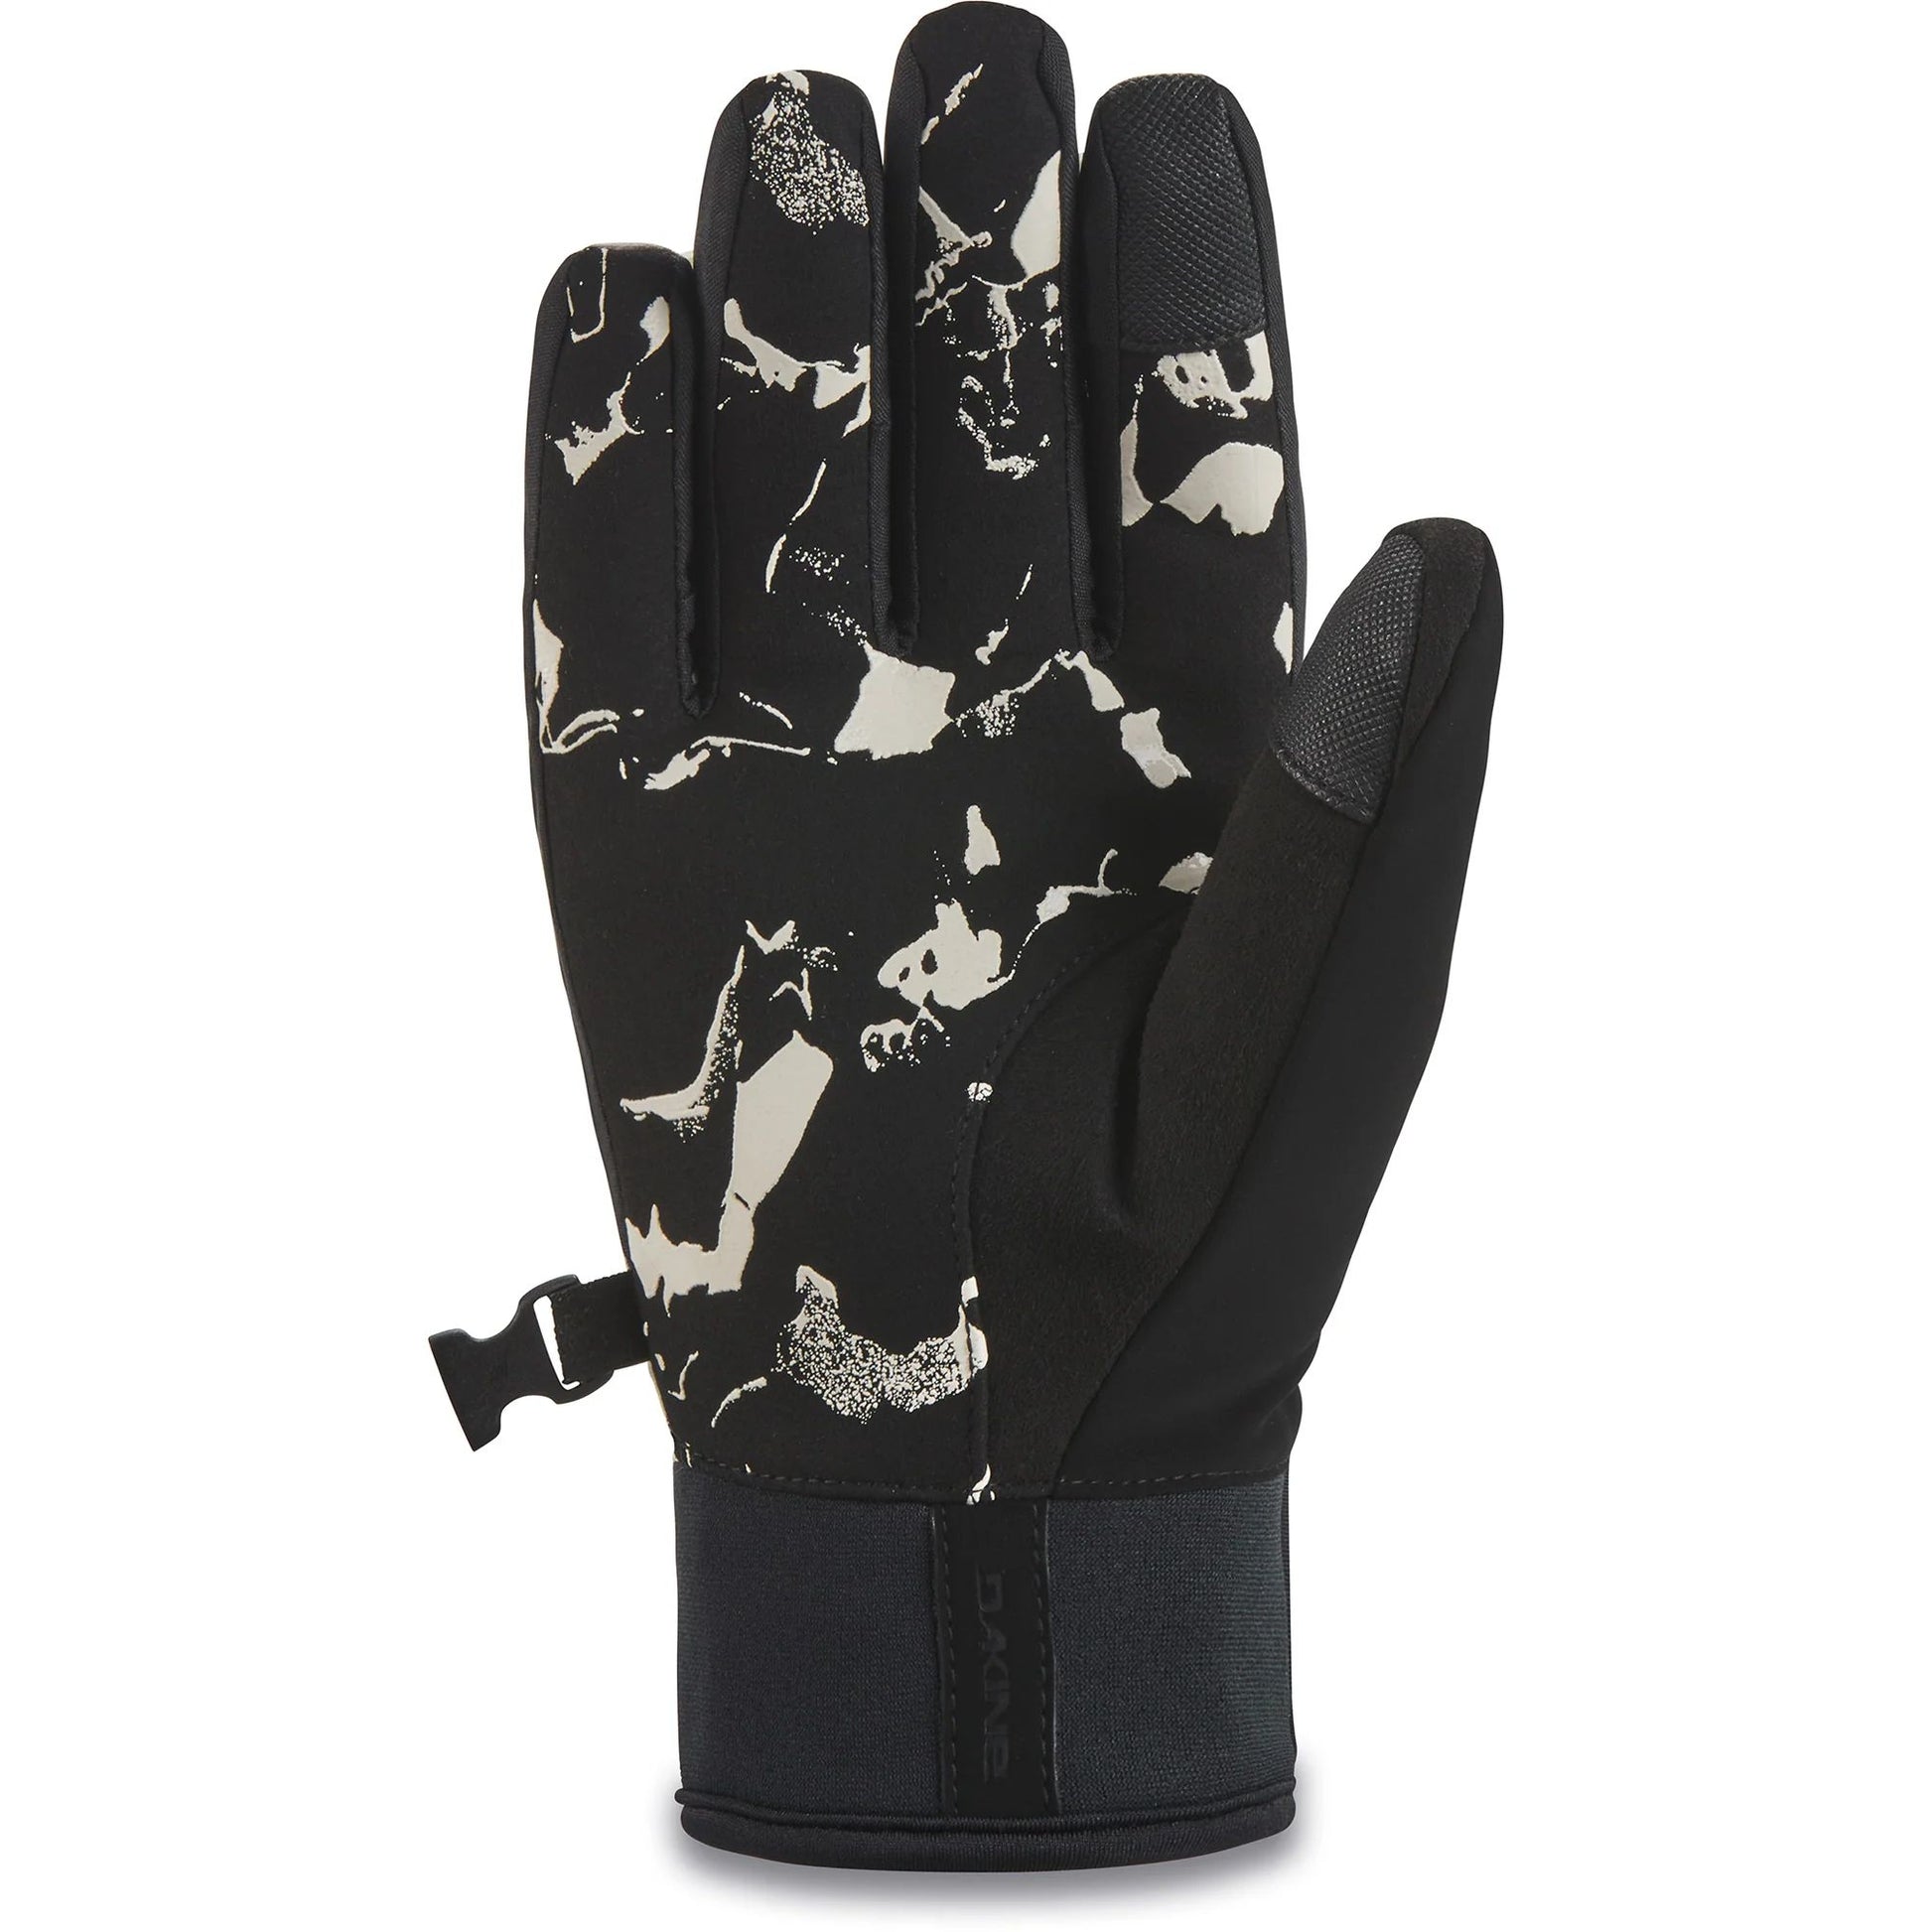 Dakine Women's Electra Glove Sand Quartz Snow Gloves